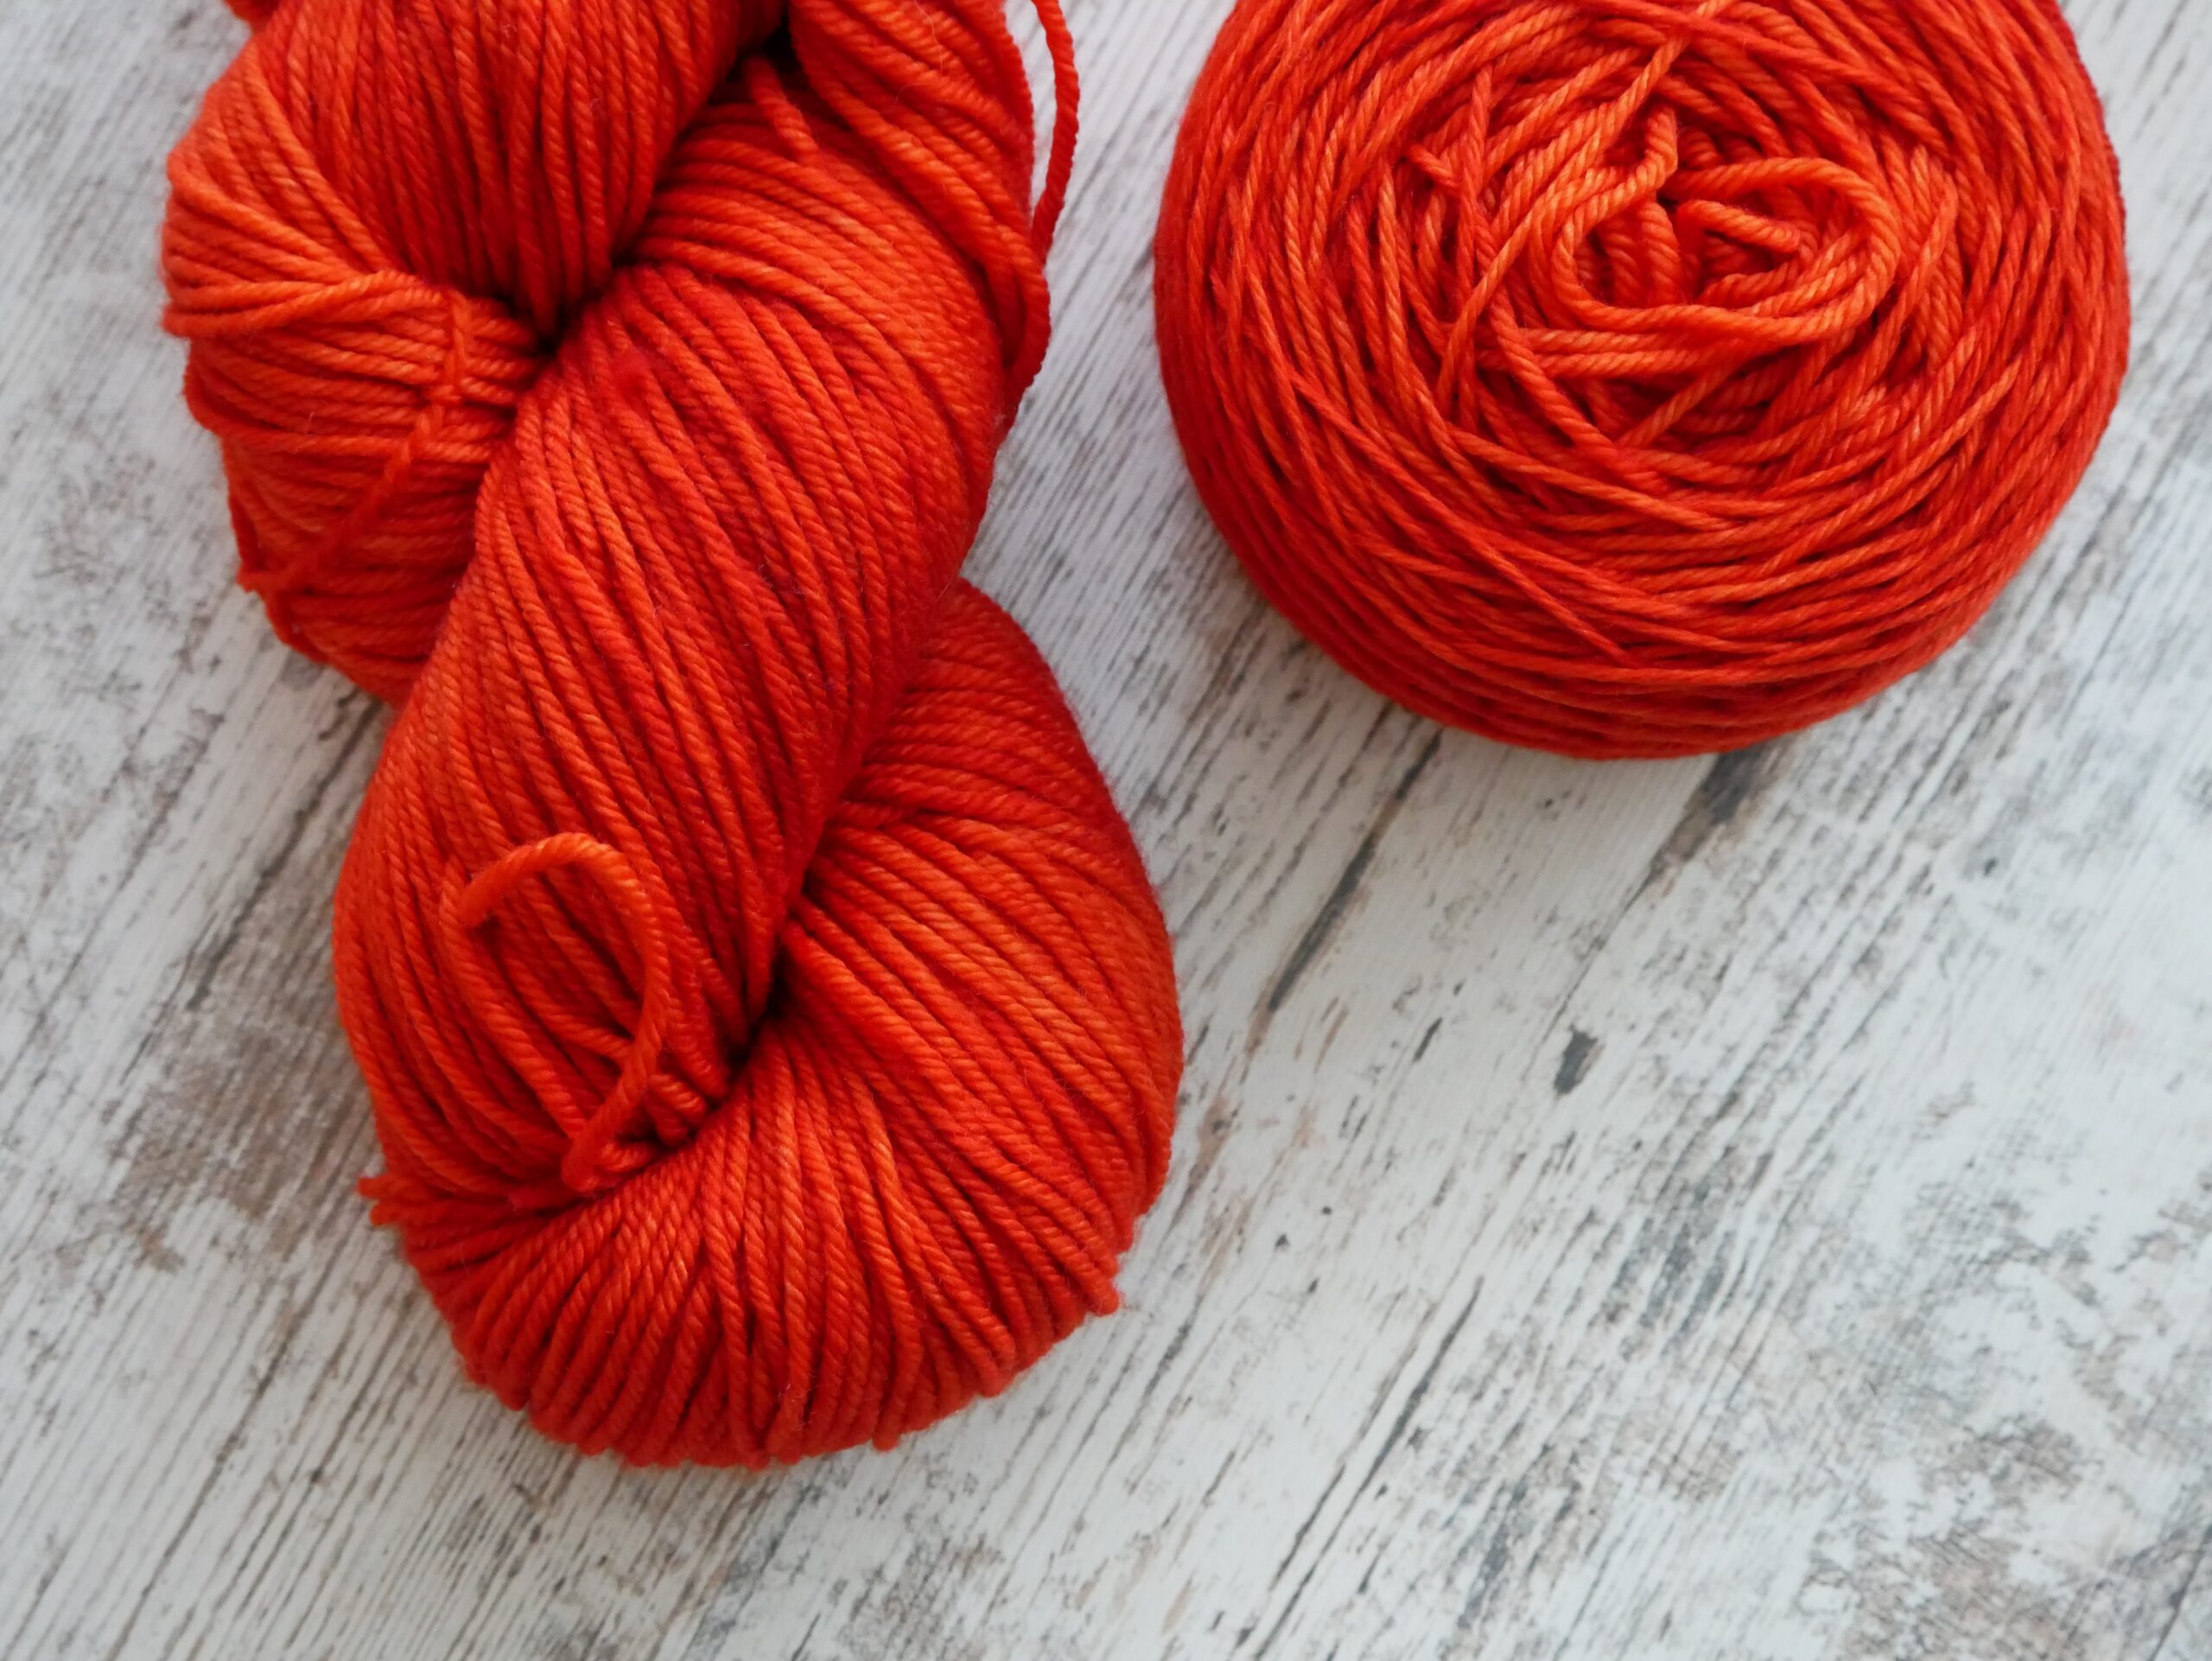 skeins of red yarn